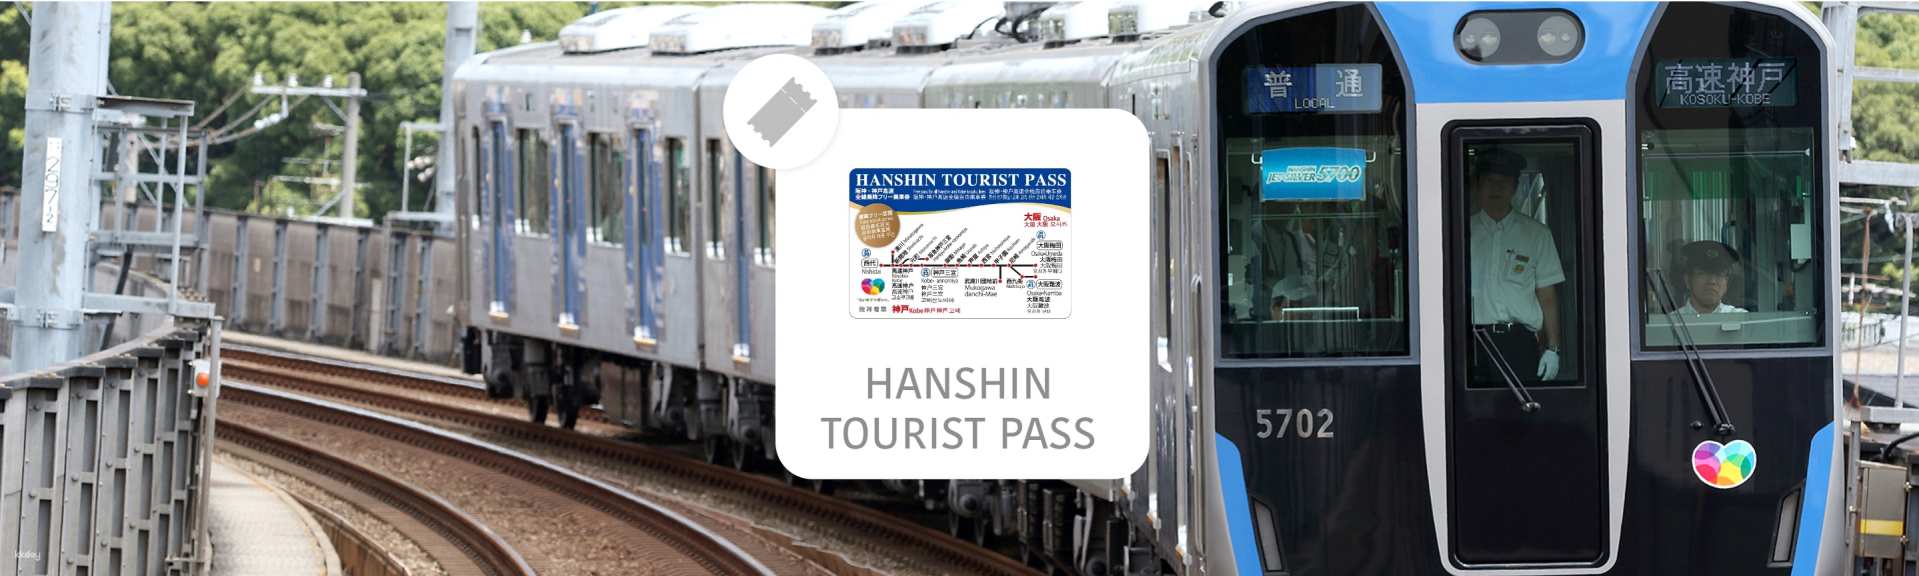 日本-阪神電鐵一日券 HANSHIN TOURIST PASS| 電子票